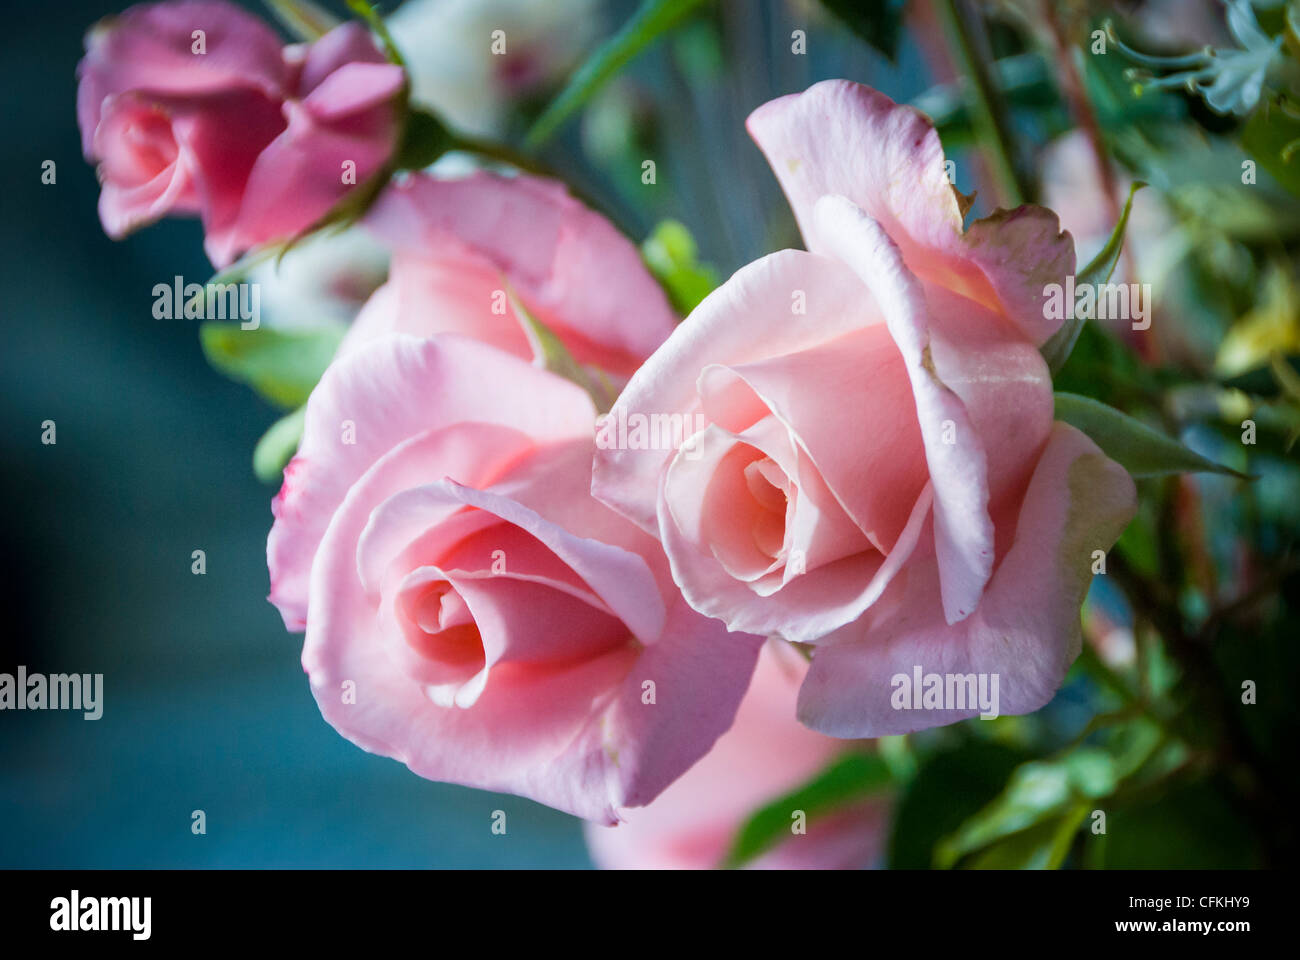 Detalle del ramo de rosas rosa clavel Foto de stock